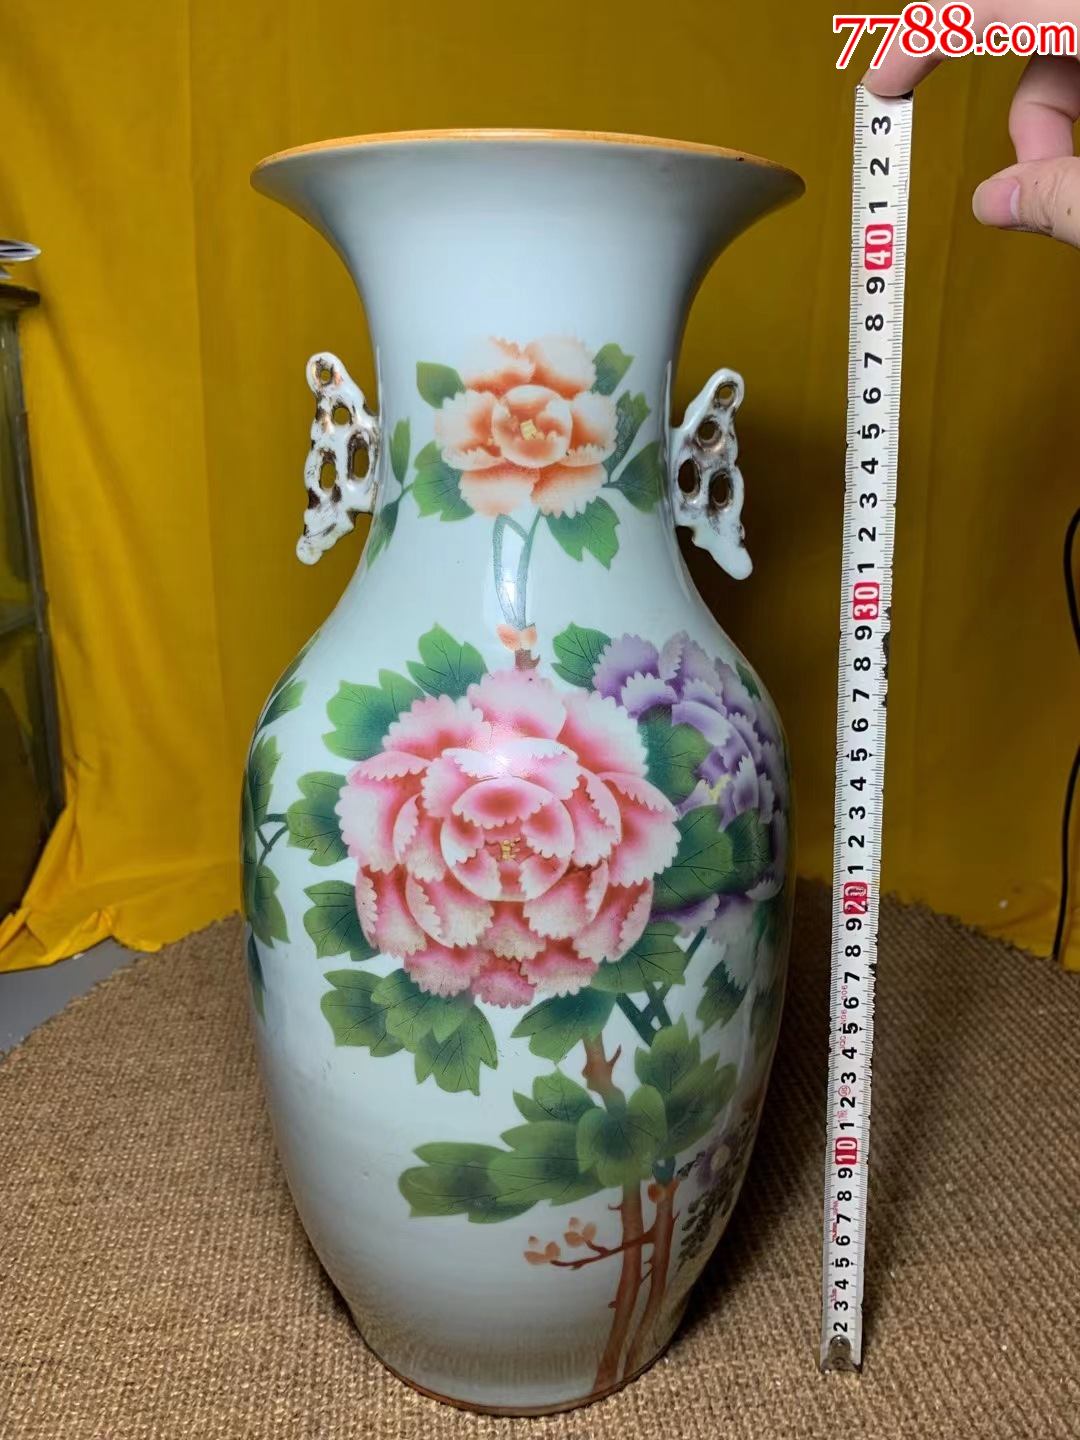 粉彩牡丹花双耳花瓶,高42公分,特价